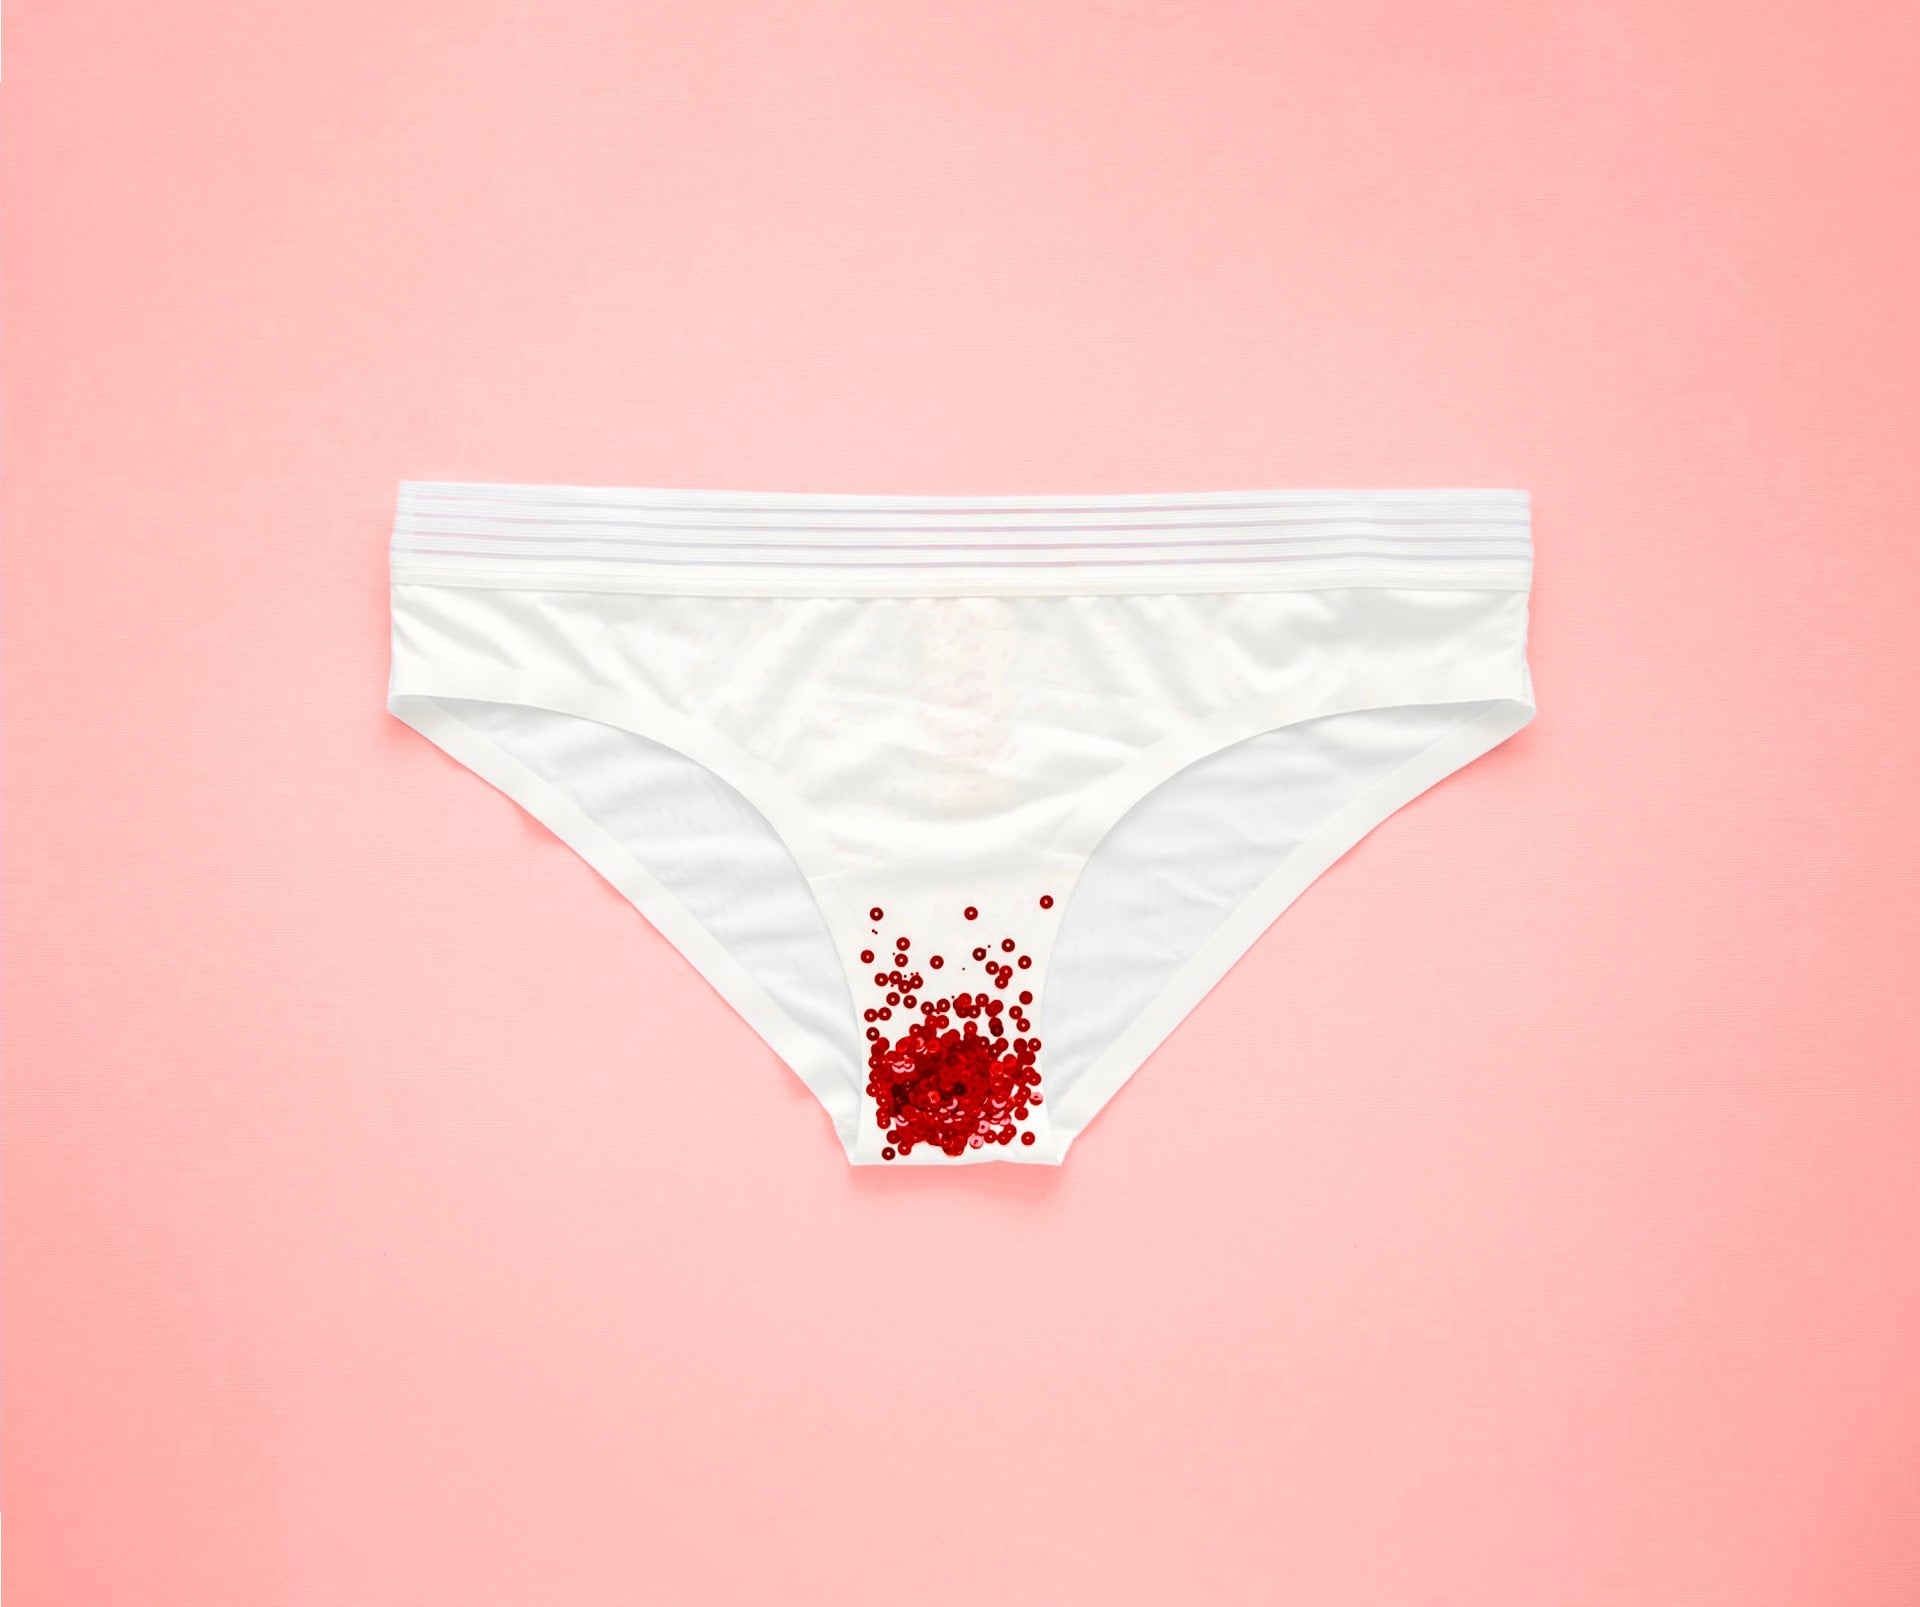 Die Zusammensetzung des Menstruationsbluts ist eine unglaubliche Ressource!